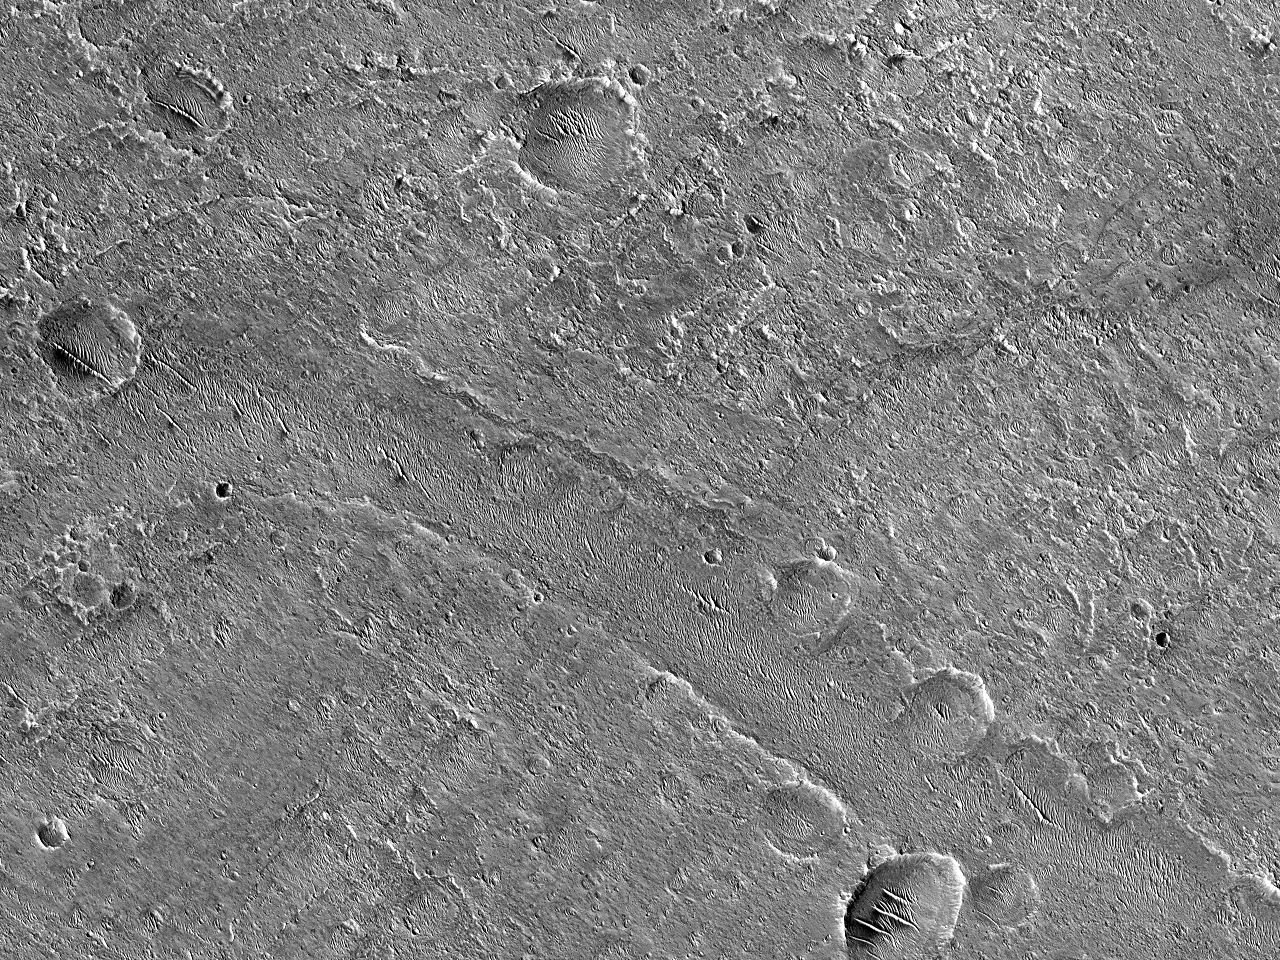 Canalisuperficiali vicino al cratere Orson Welles